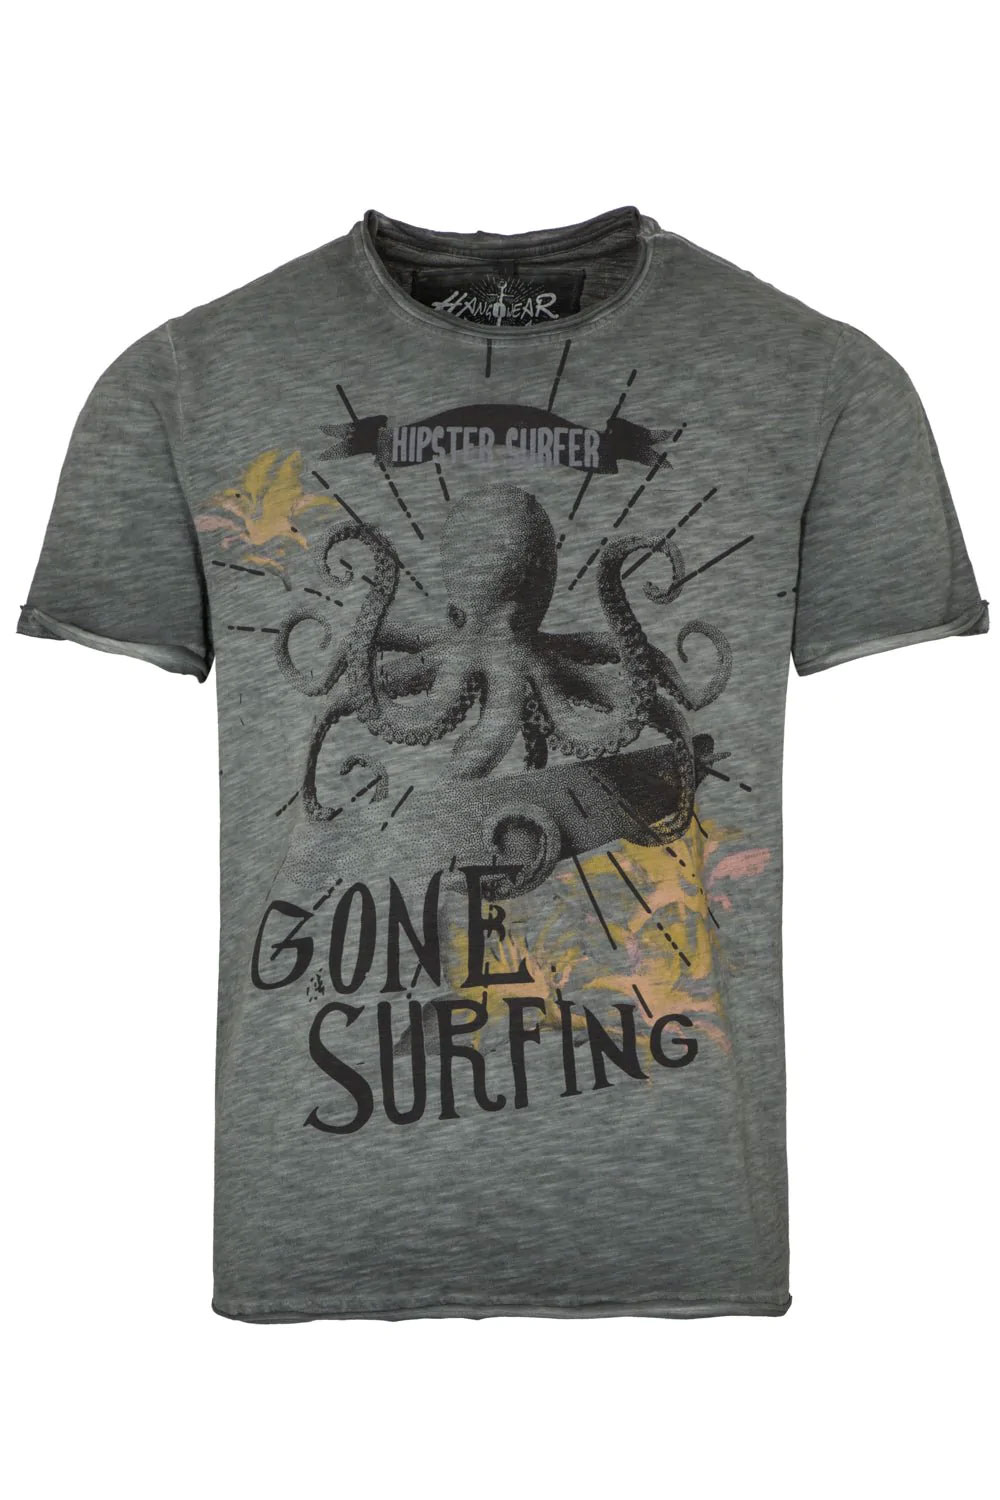 Trachten T-Shirt Surfing